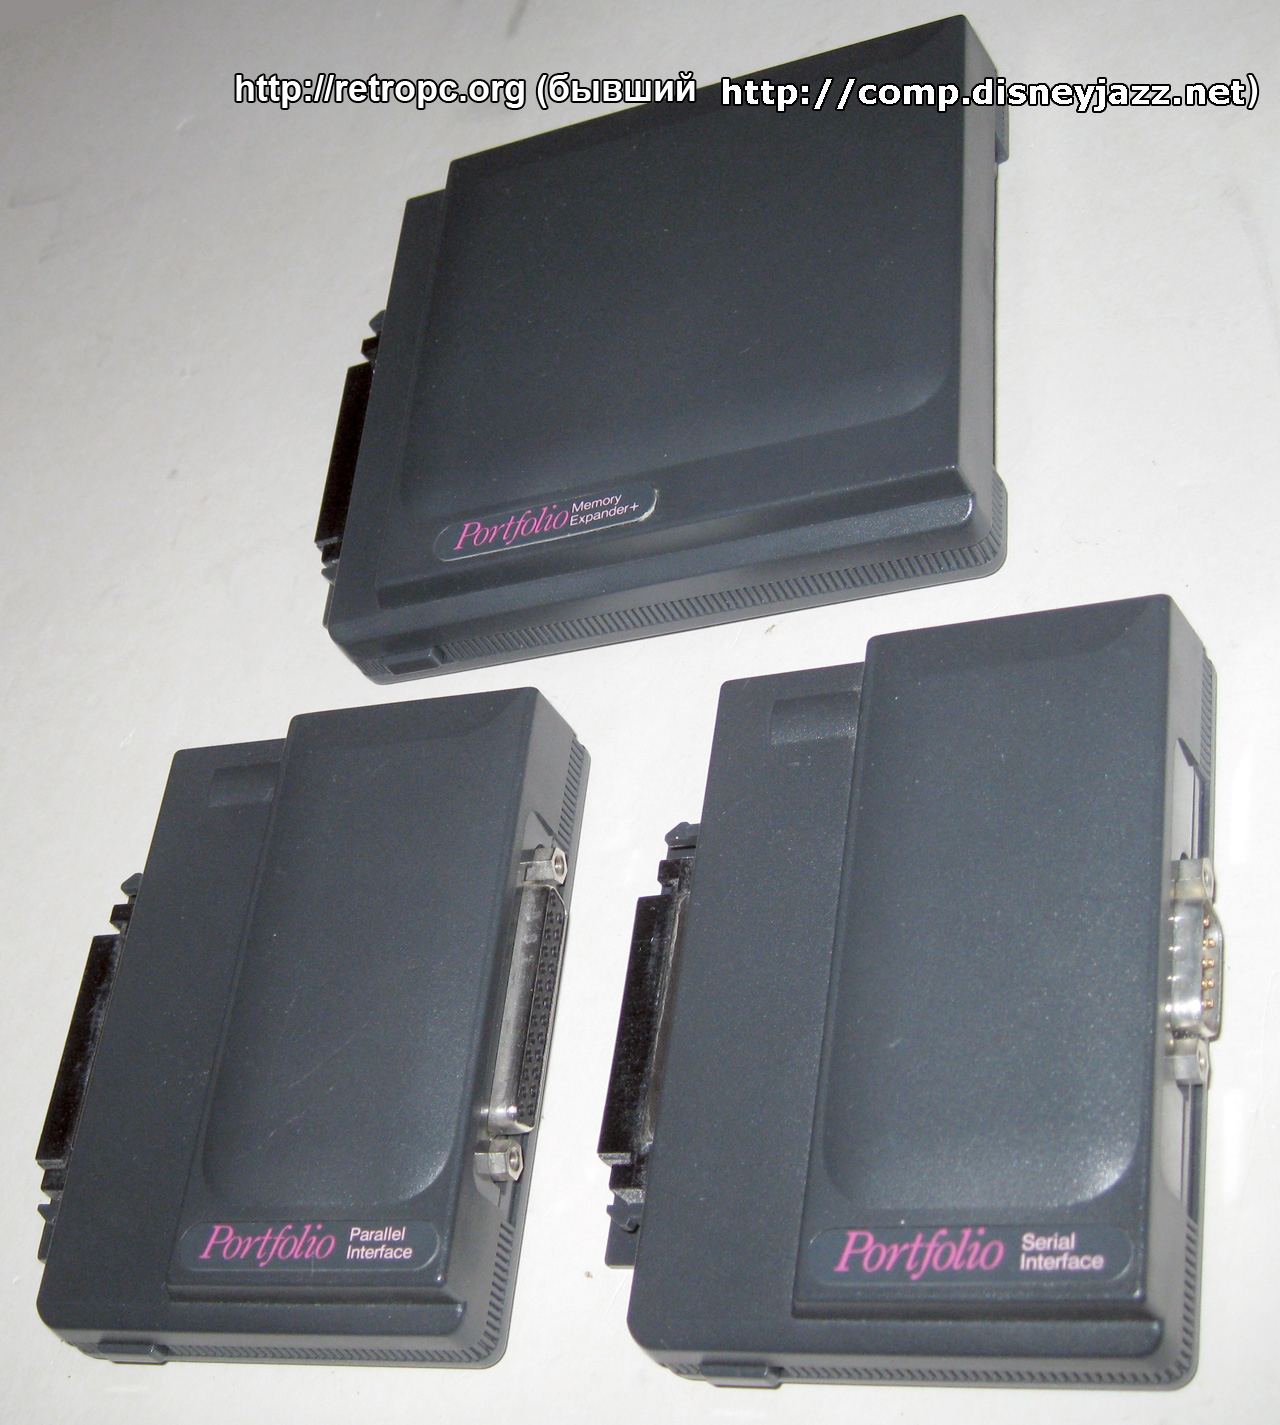 Модули параллельного и последовательного интерфейса, модуль расширения памяти к микрокомпьютеру Atari Portfolio